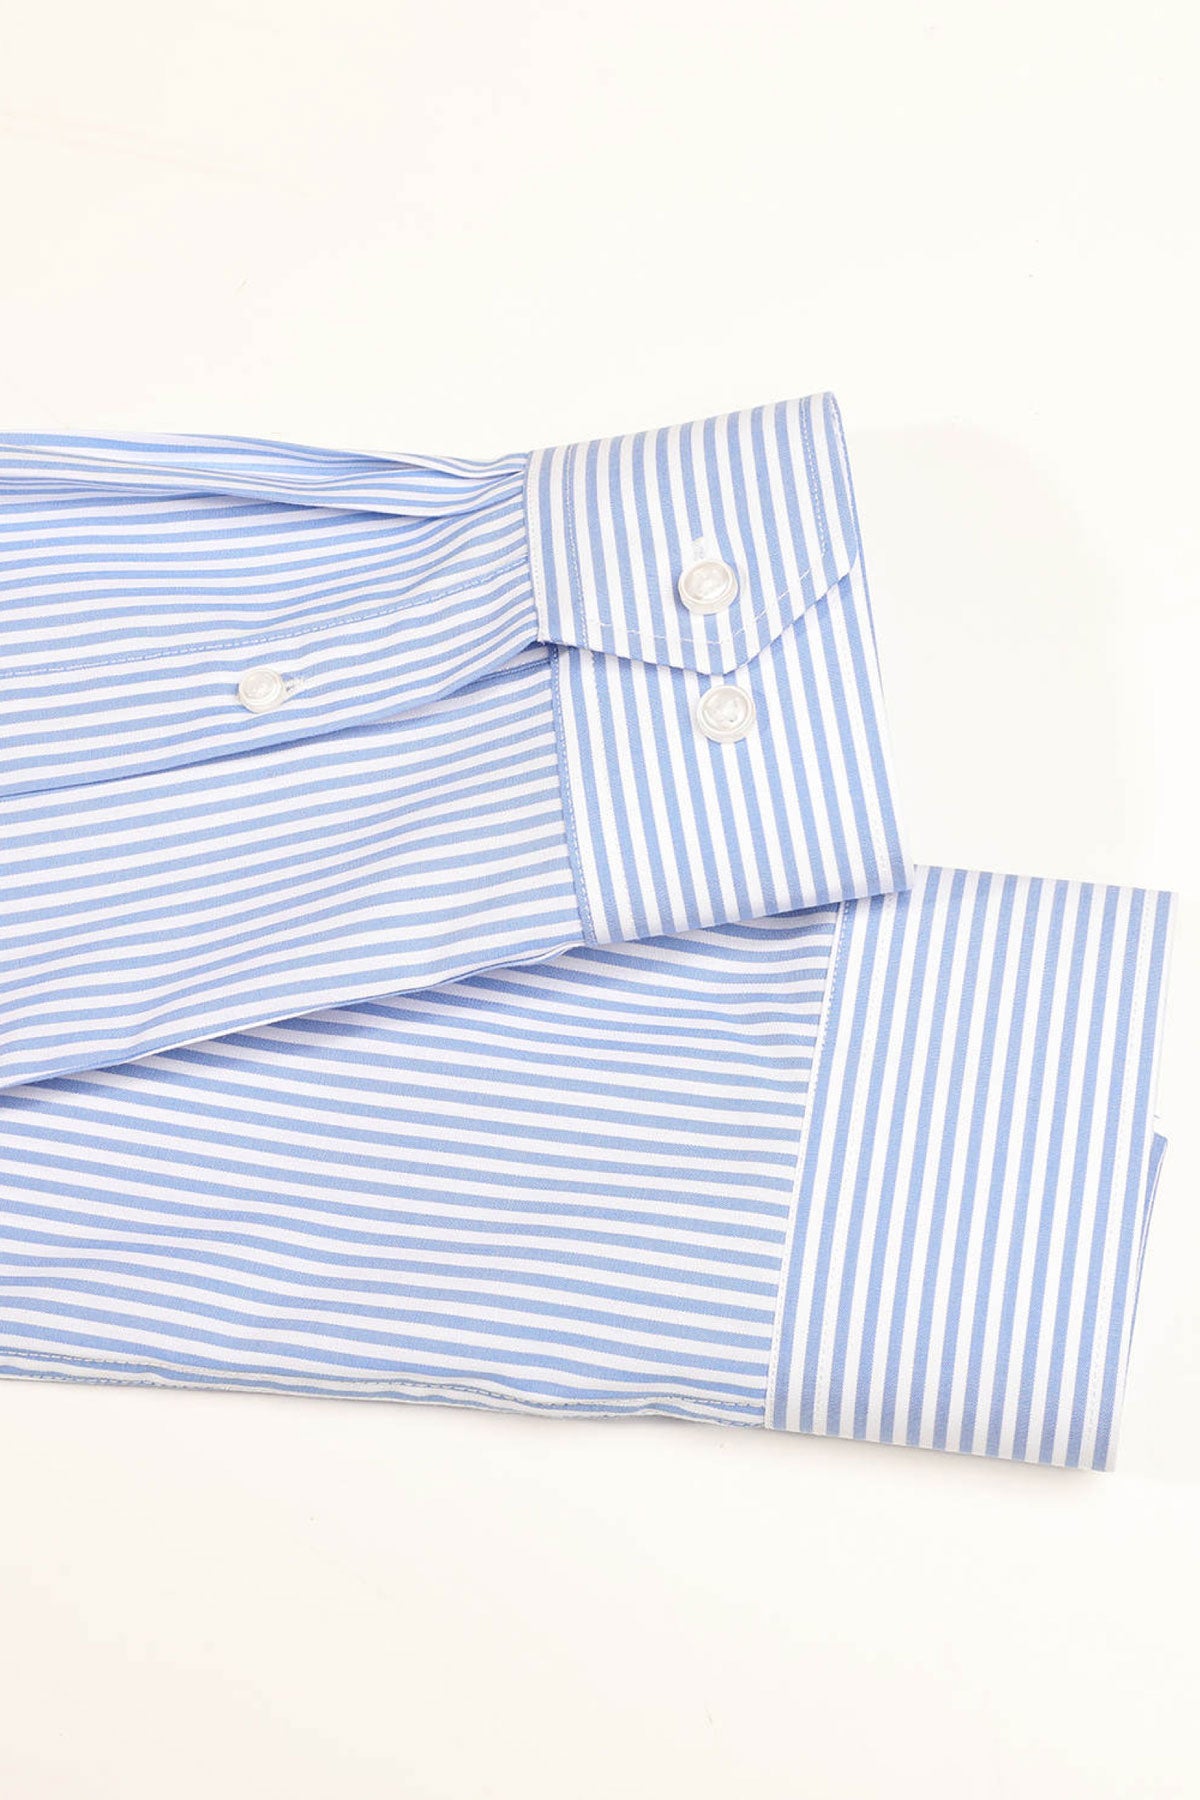 Strijkvrij Overhemd - Lichtblauw Gestreept Poplin - Overhemd - Vercate - Vercate - Overhemden - Strijkvrije overhemden - Heren